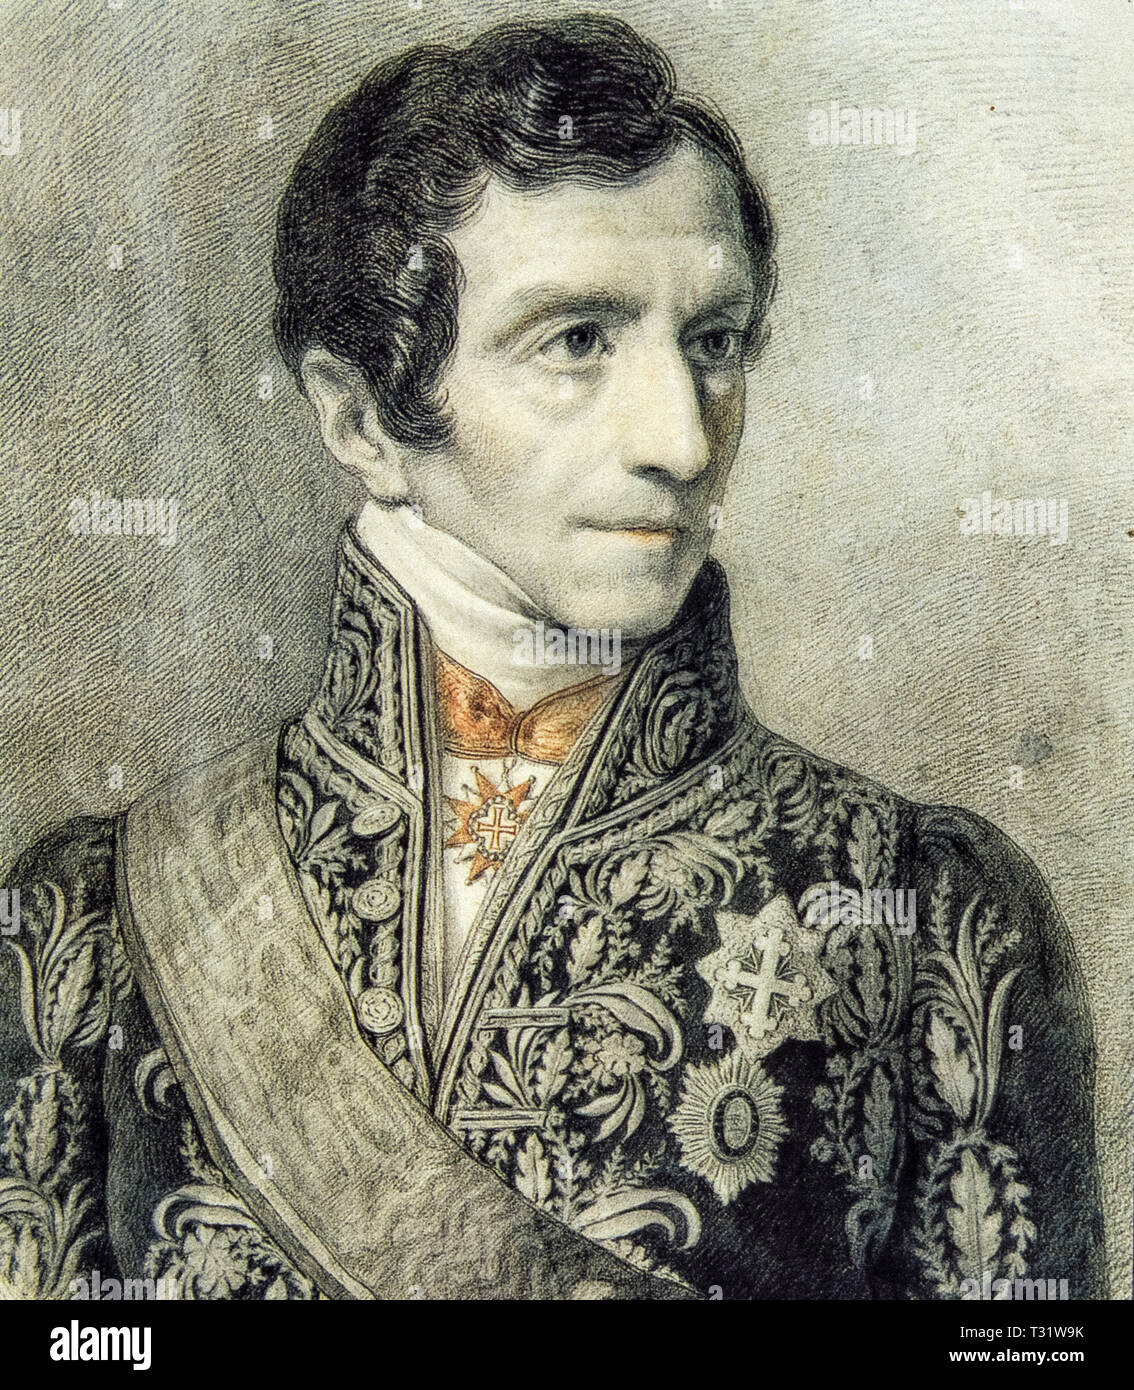 Luigi Giuseppe Barbaroux noto come Giuseppe Barbaroux (Cuneo, 6 Dicembre 1772 - Torino, 11 maggio 1843) era un avvocato italiano, giurista, avvocato generale presso il Senato di Genova nel 1815 e poi ambasciatore a Roma dal 1816 al 1824 Foto Stock